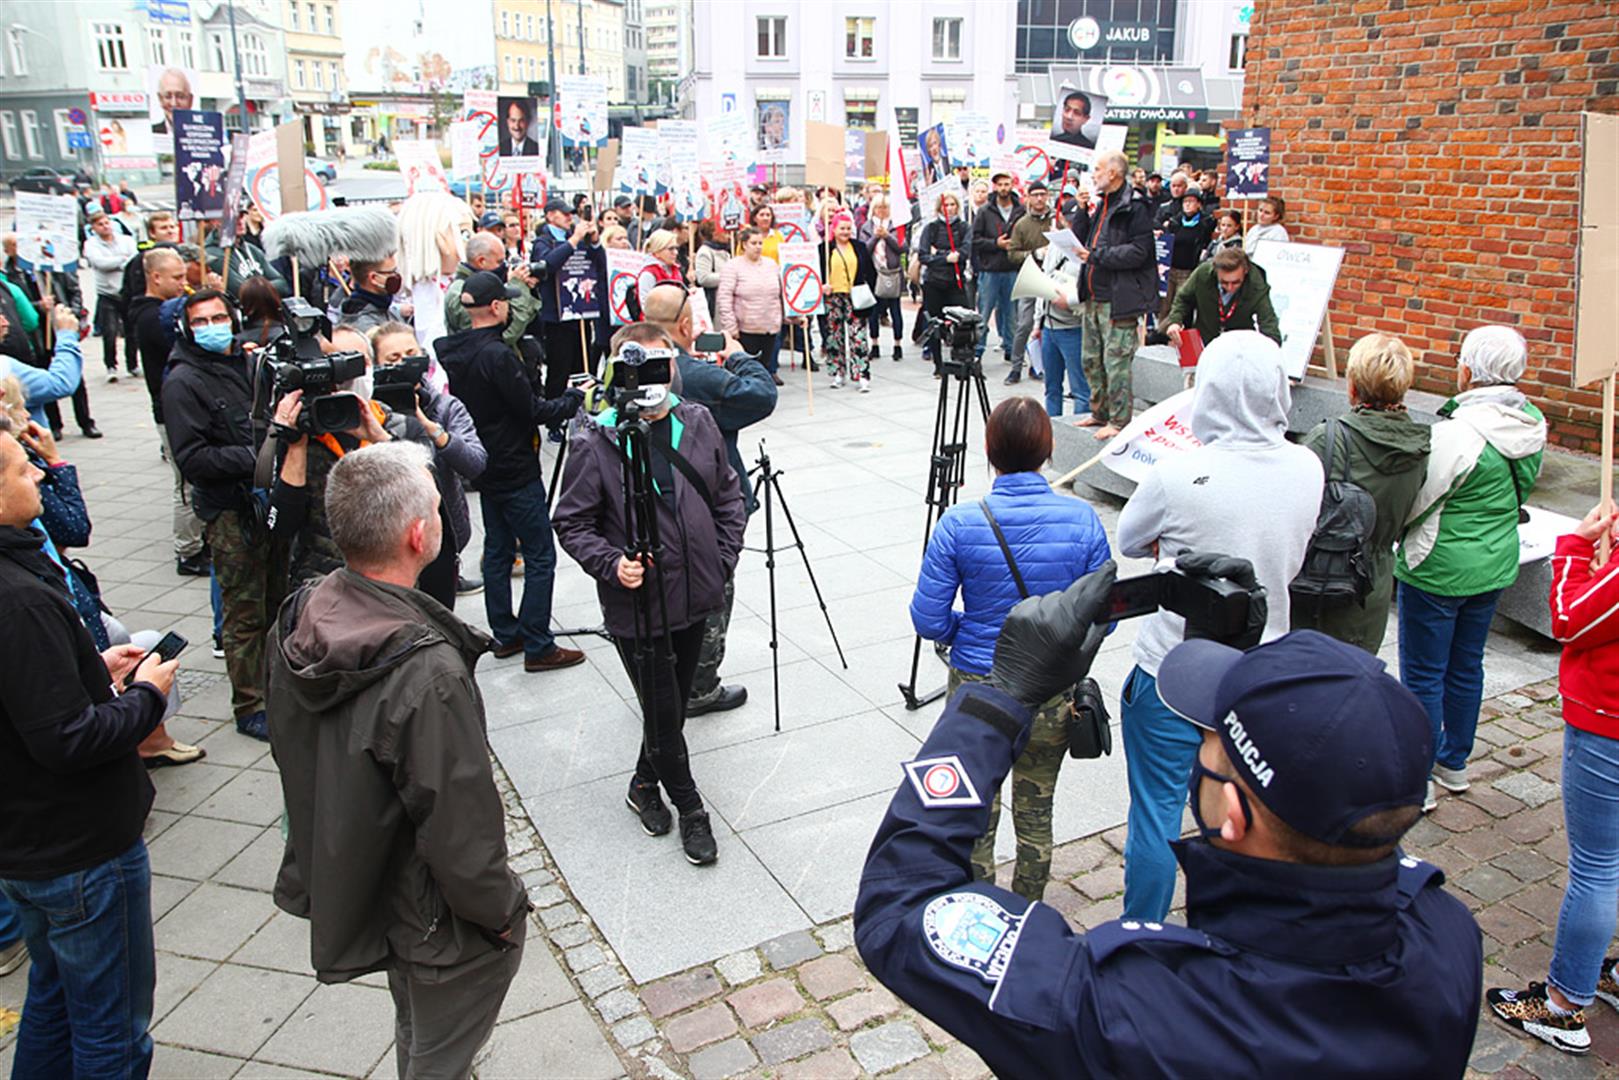 Protest „antycovidowców” w Olsztynie. Setki osób bez maseczek. Tłum rzucił się na policjantów